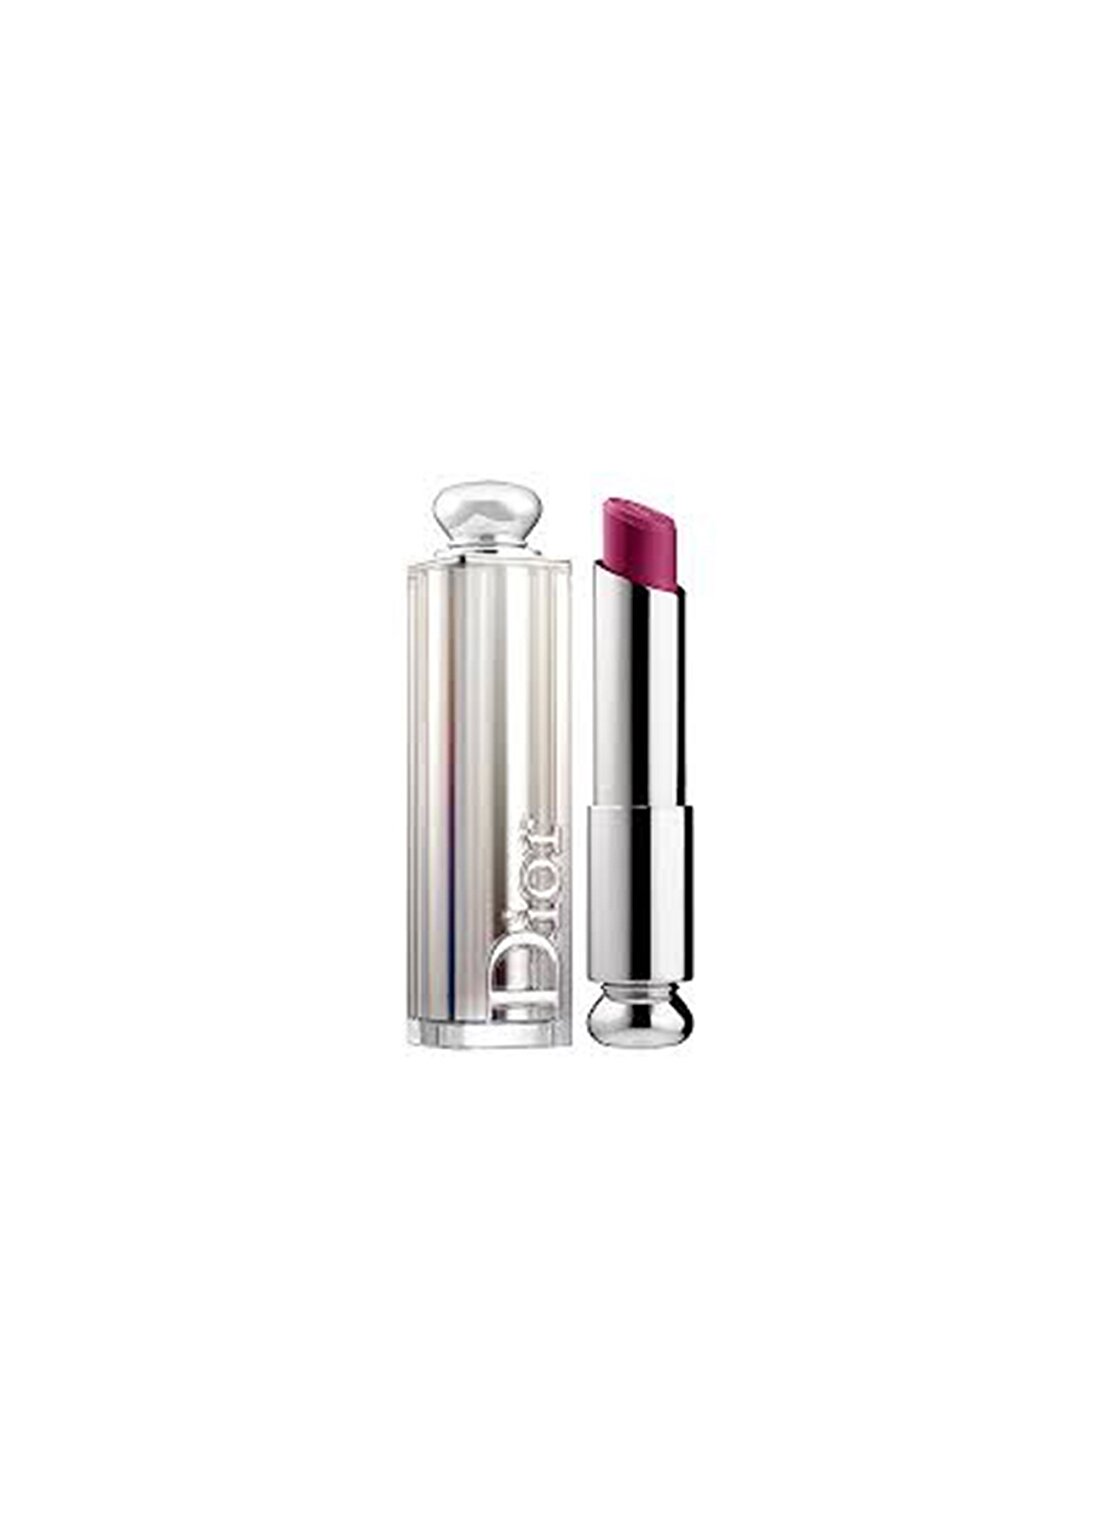 Dior Addict Lipstick 987 Black Tie Ruj